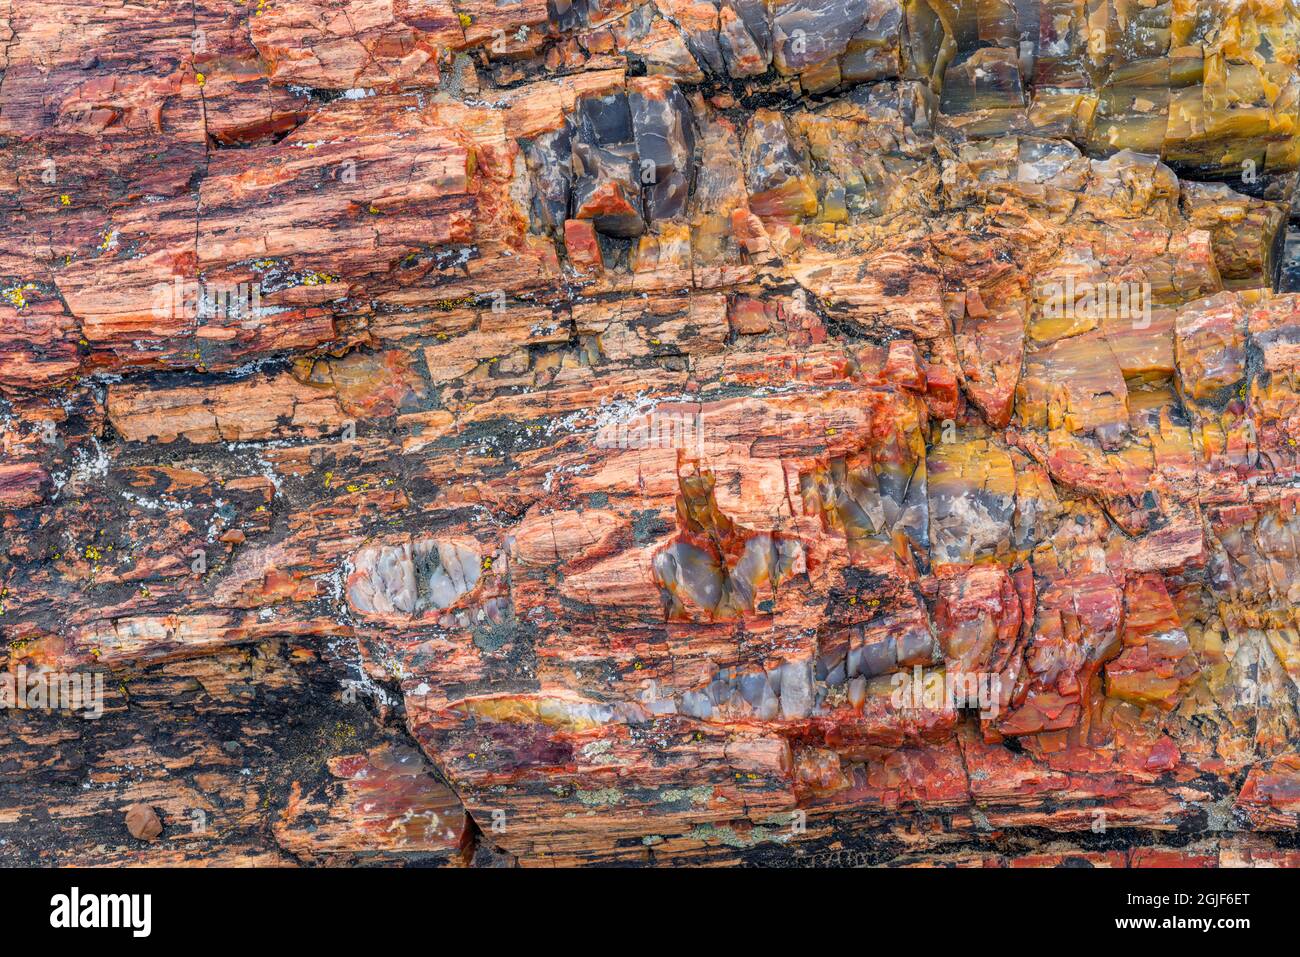 USA, Utah, Escalante Petrified Forest State Park, farbenfrohe Überreste aus versteinertem Holz. Stockfoto